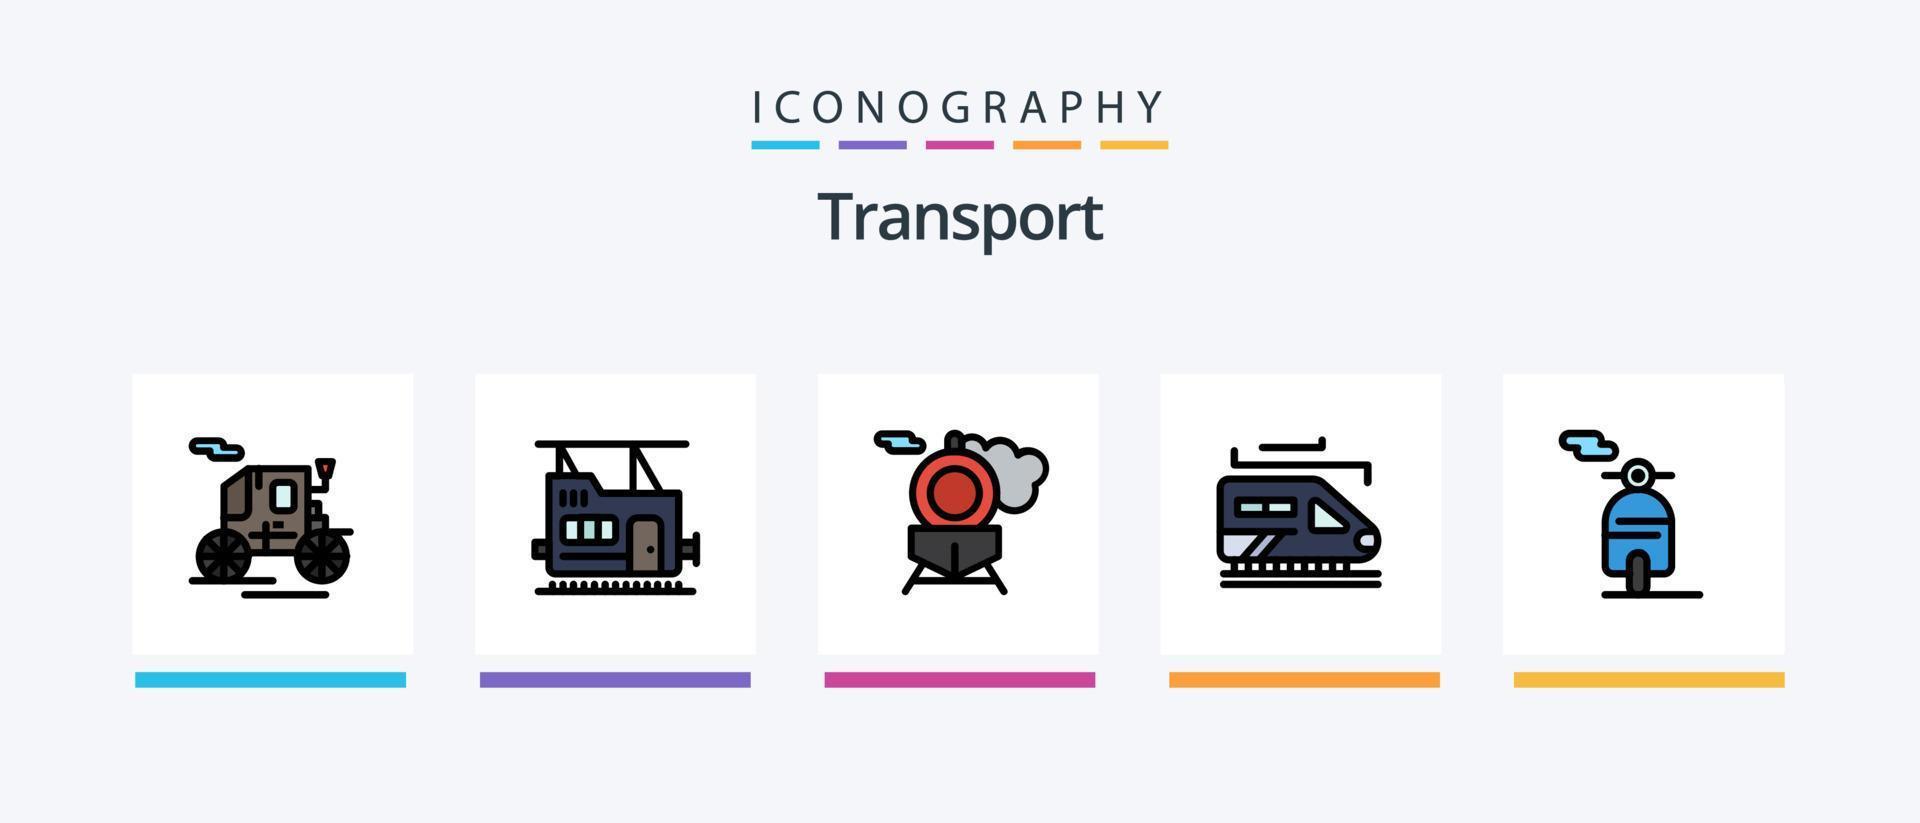 la línea de transporte llenó el paquete de 5 íconos que incluye . transporte. transporte. tranvía transportación. diseño de iconos creativos vector